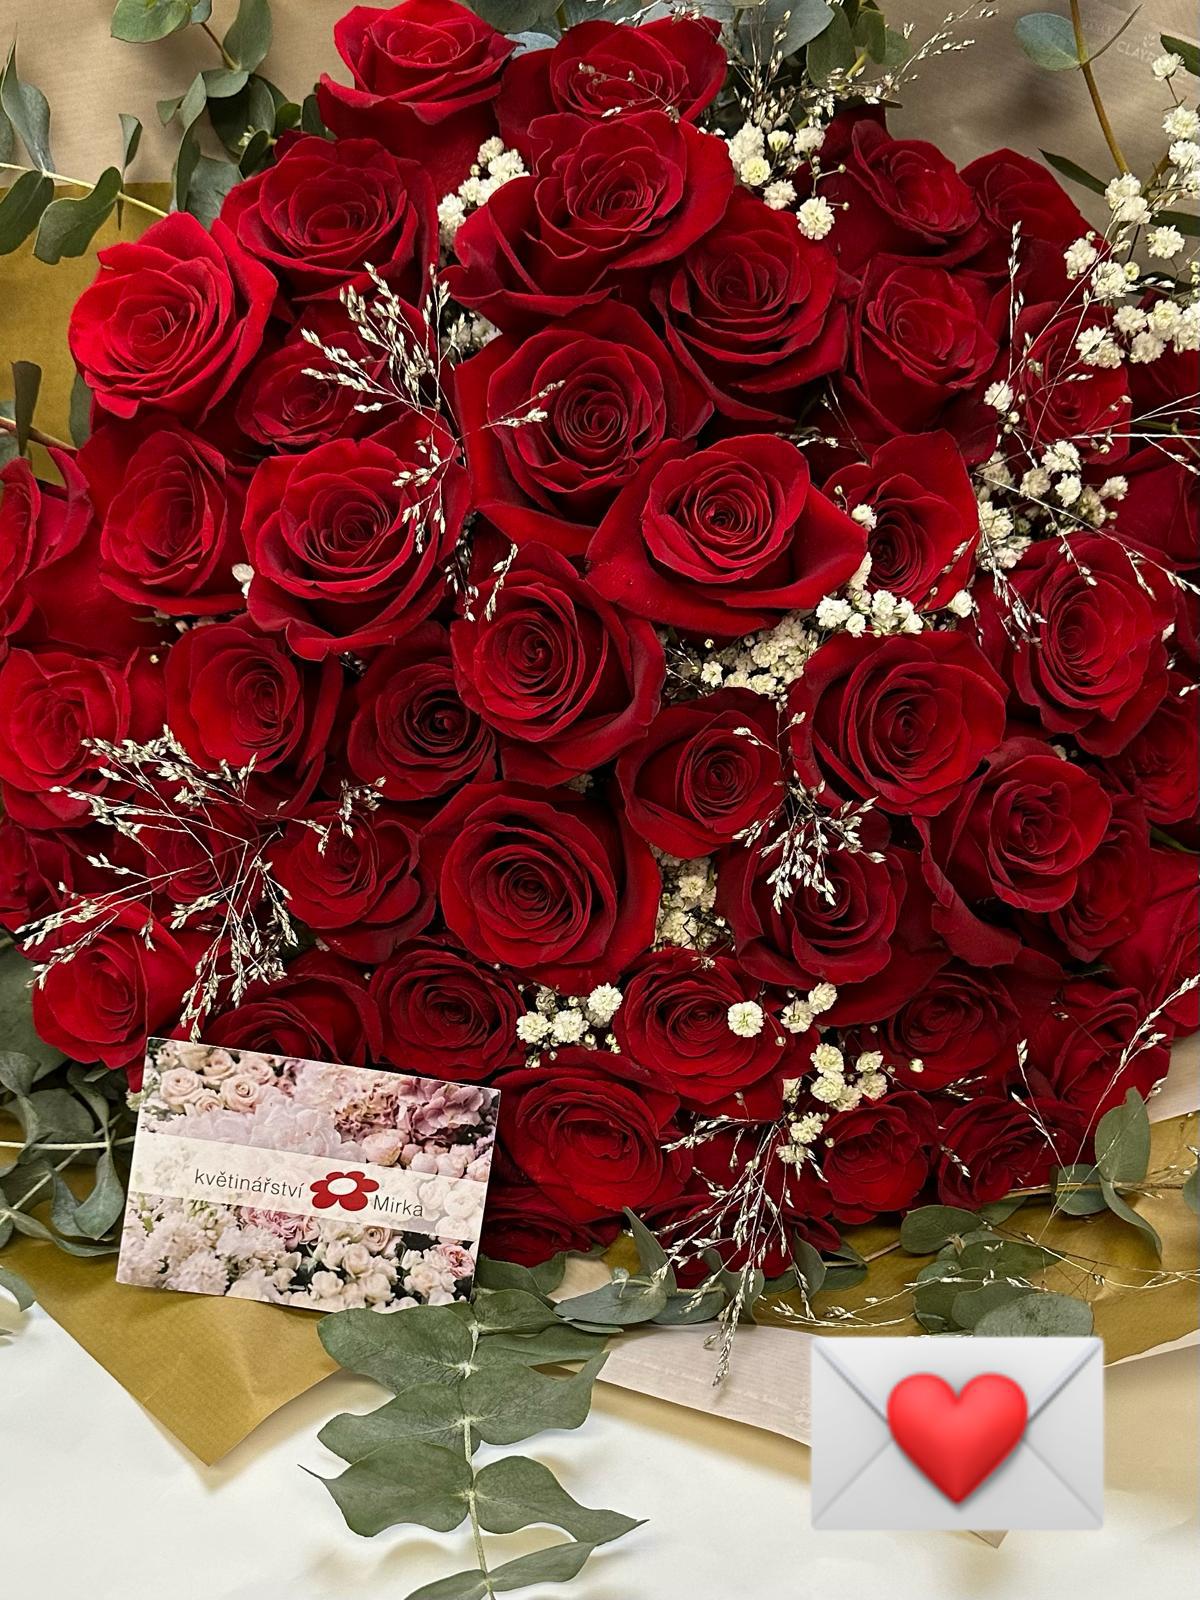 Vanentýnská kytice červených růží